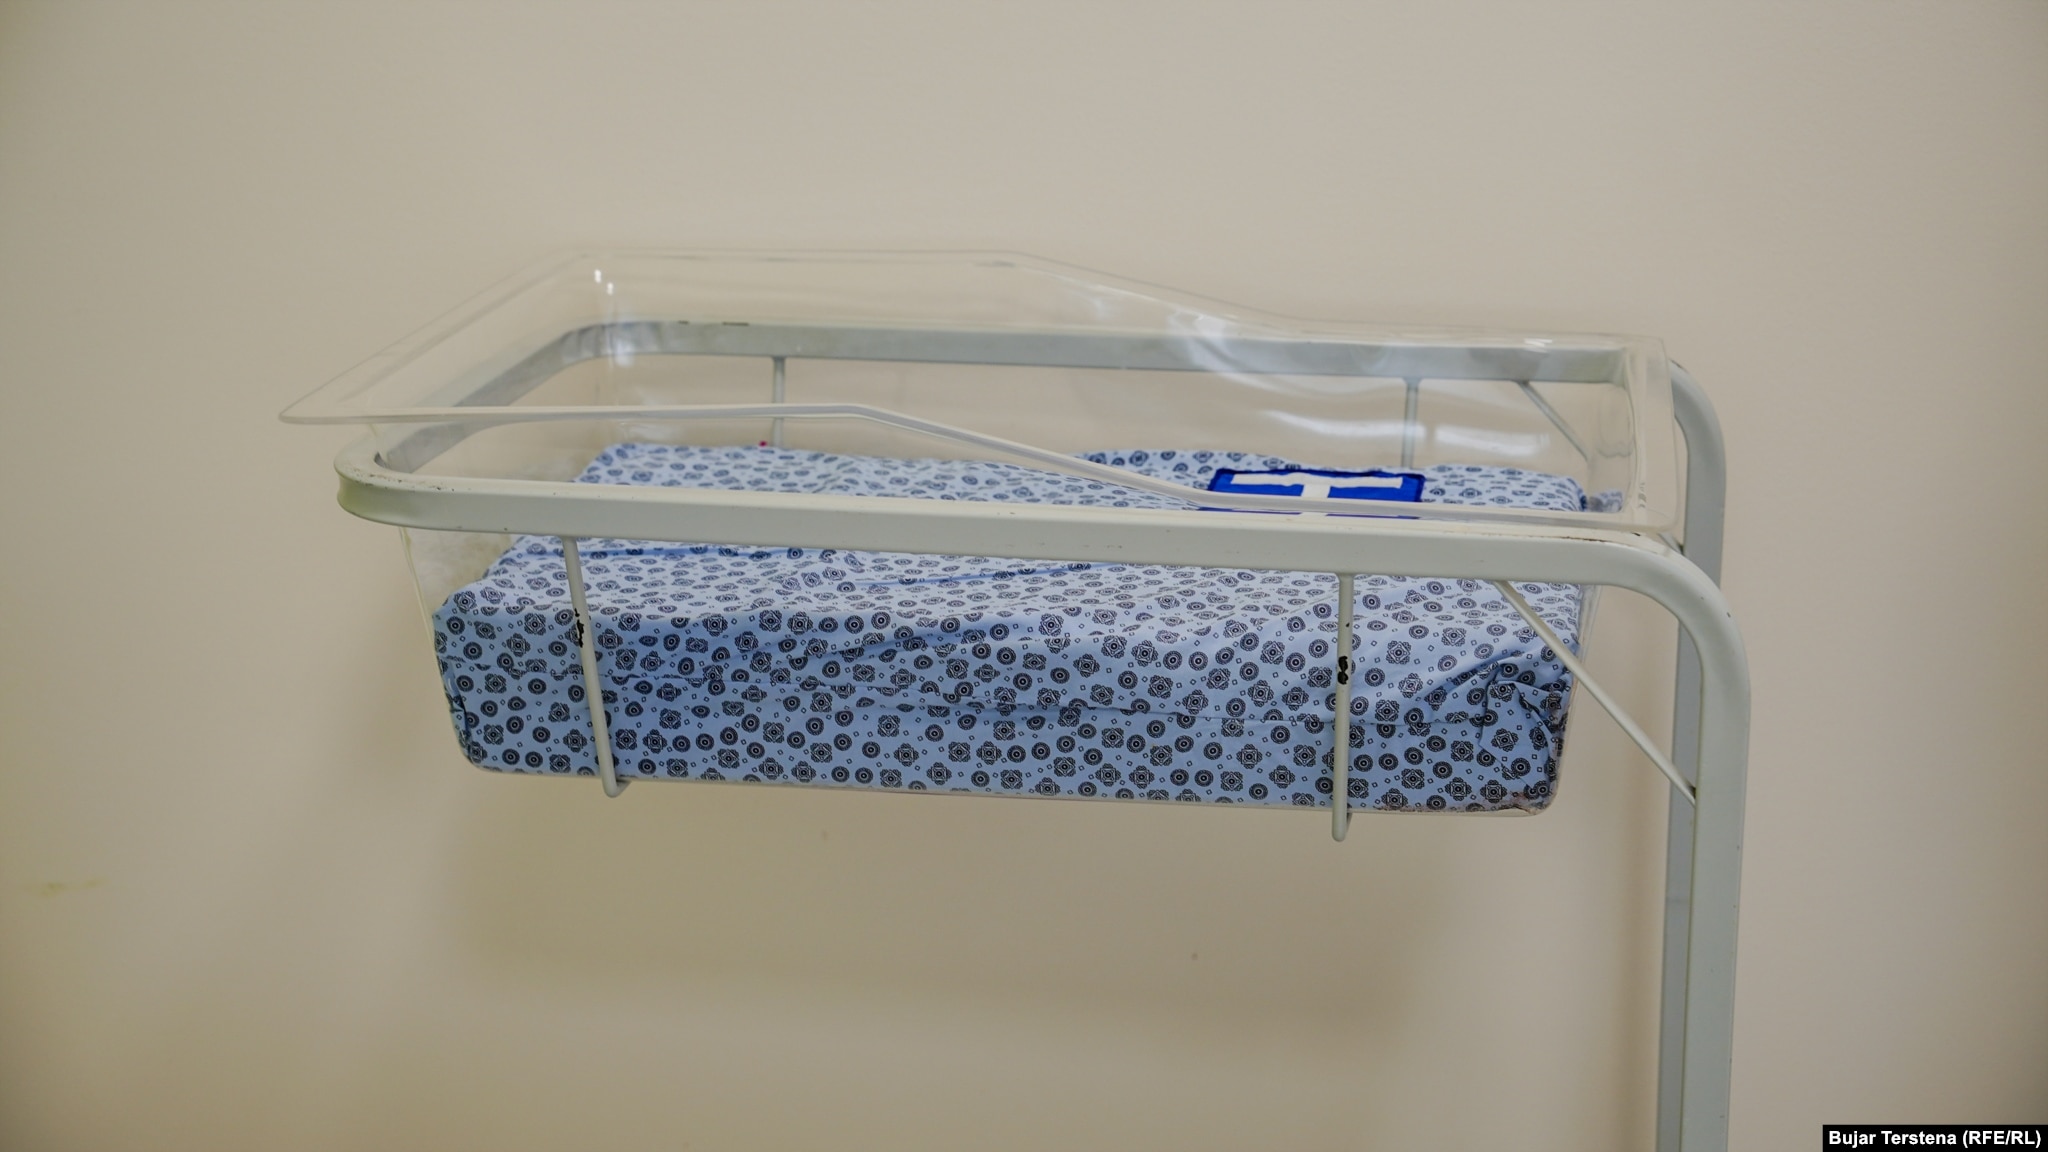 Një shtrat i vogël për foshnja të porsalindura. Nga një i tillë gjendet pranë secilit shtrat nëpër dhoma.